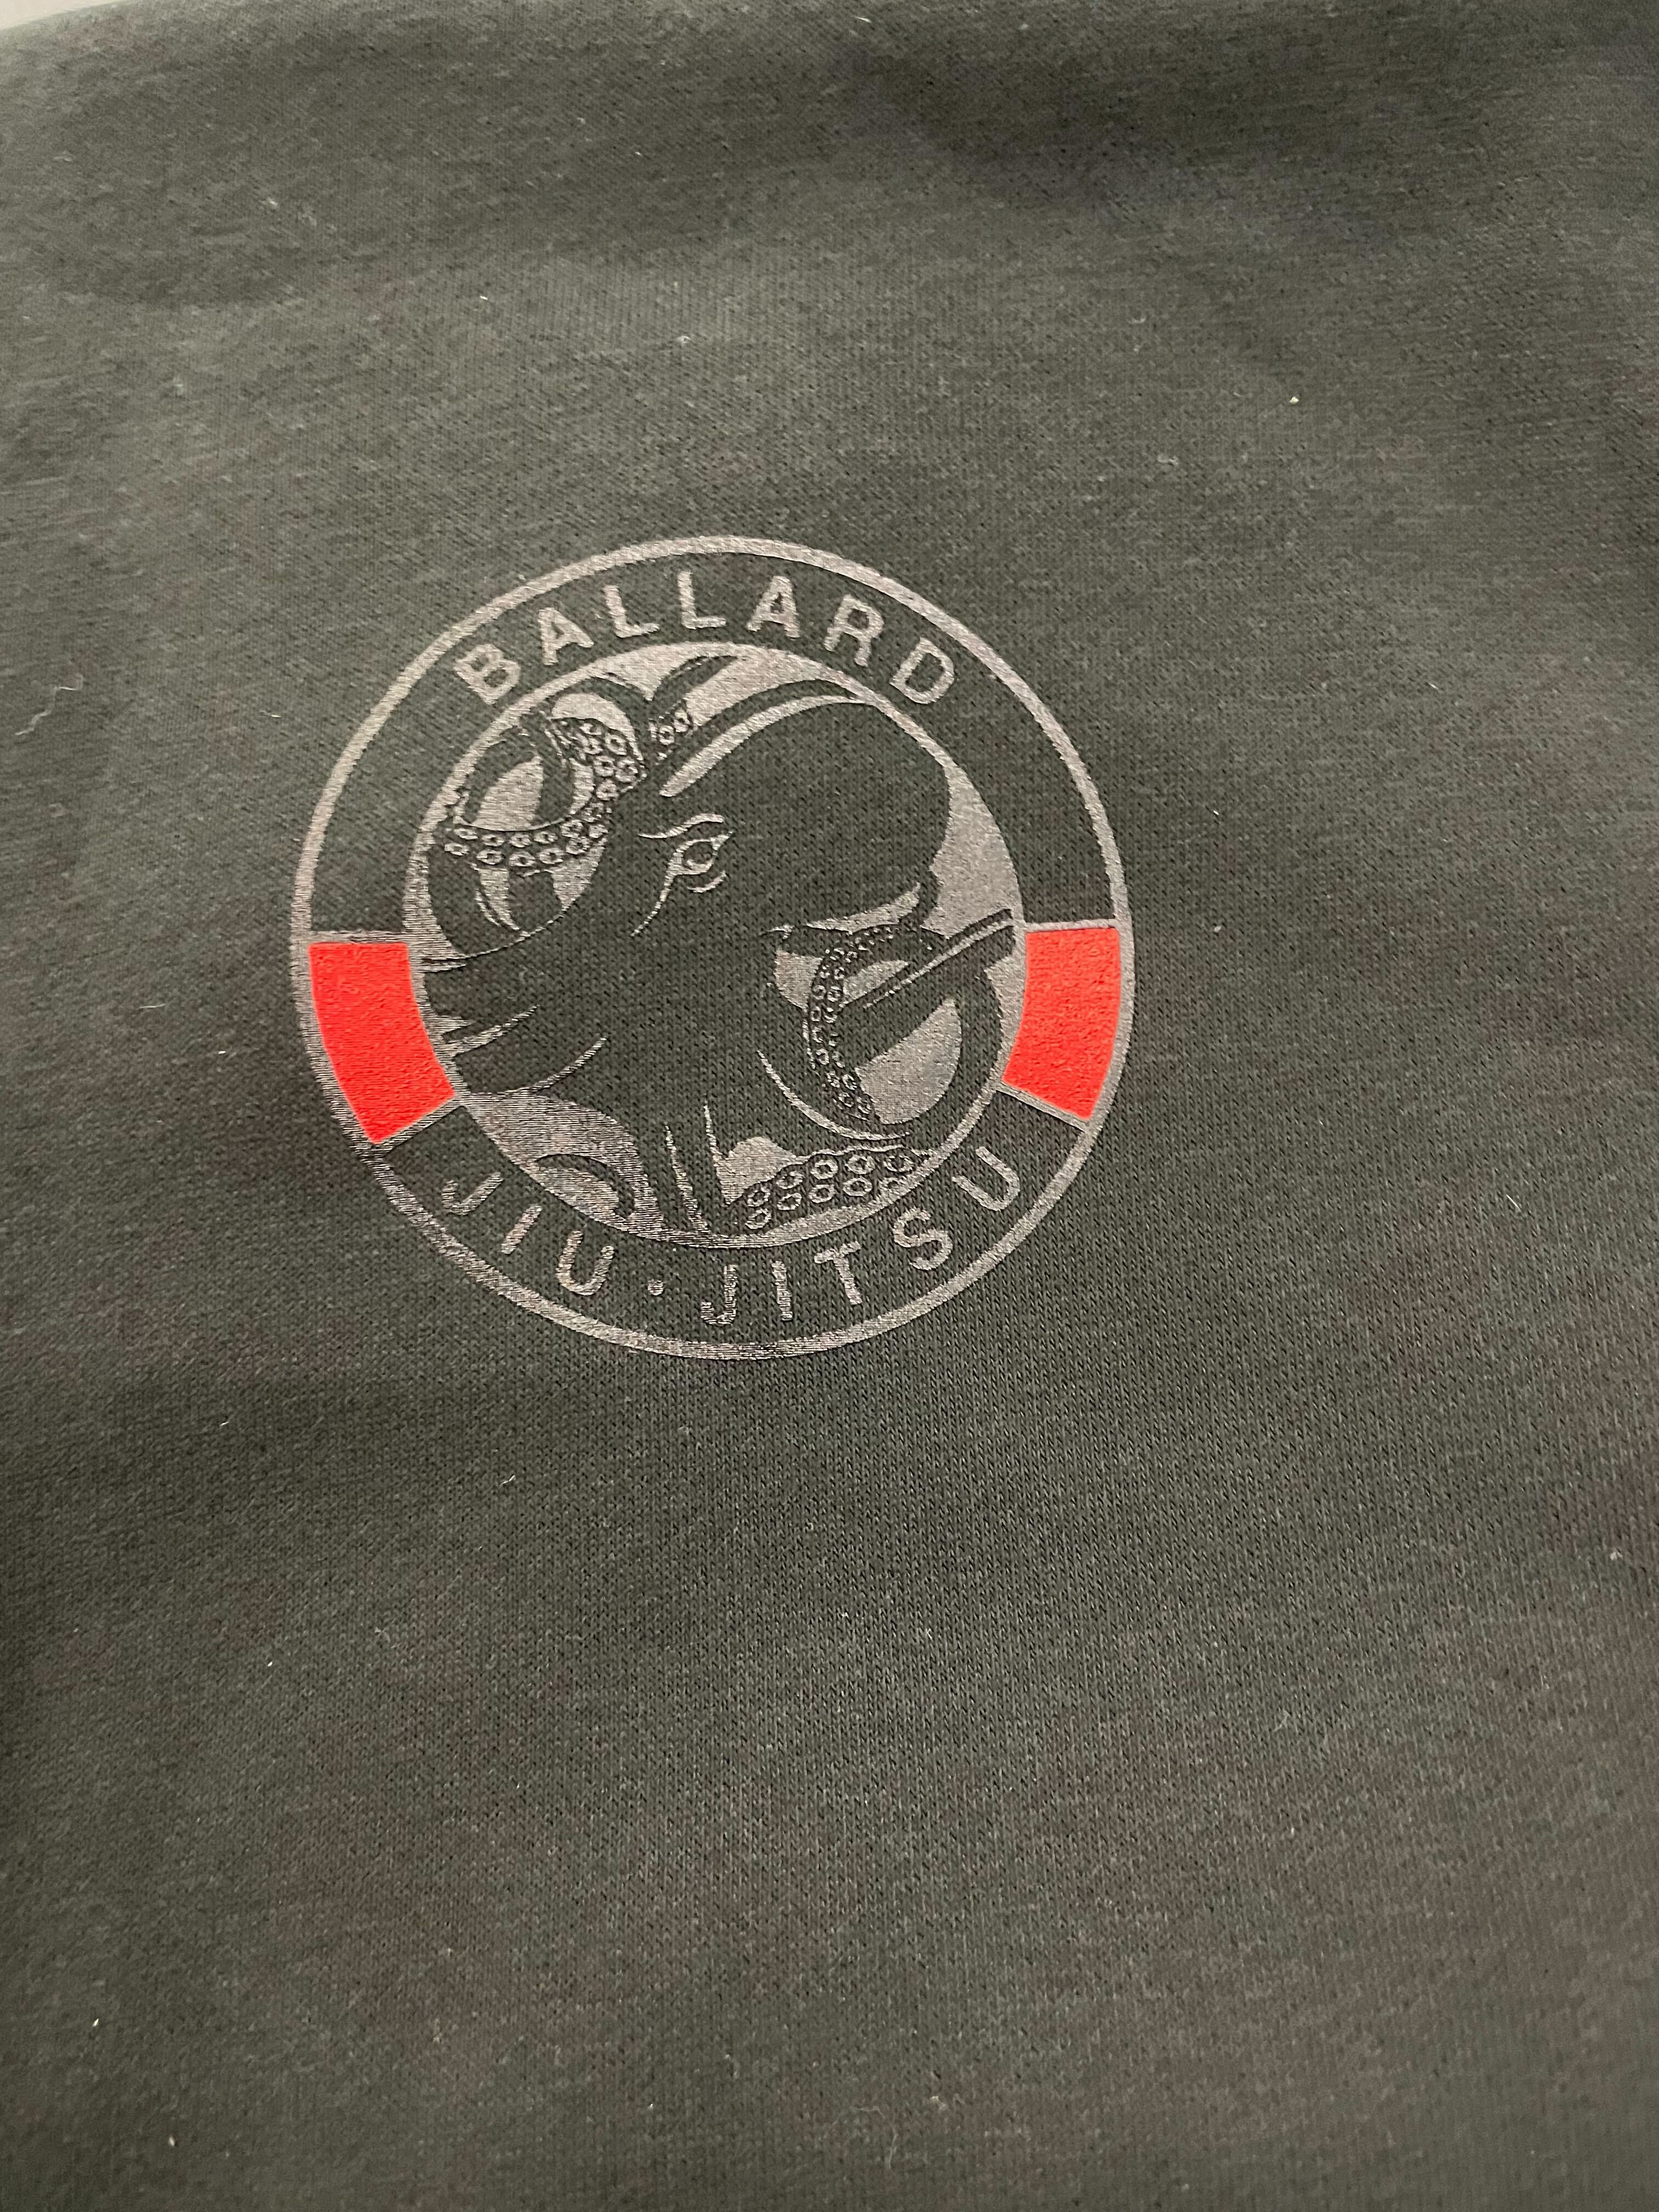 Ballard Jiu Jitsu zip-up hoodie